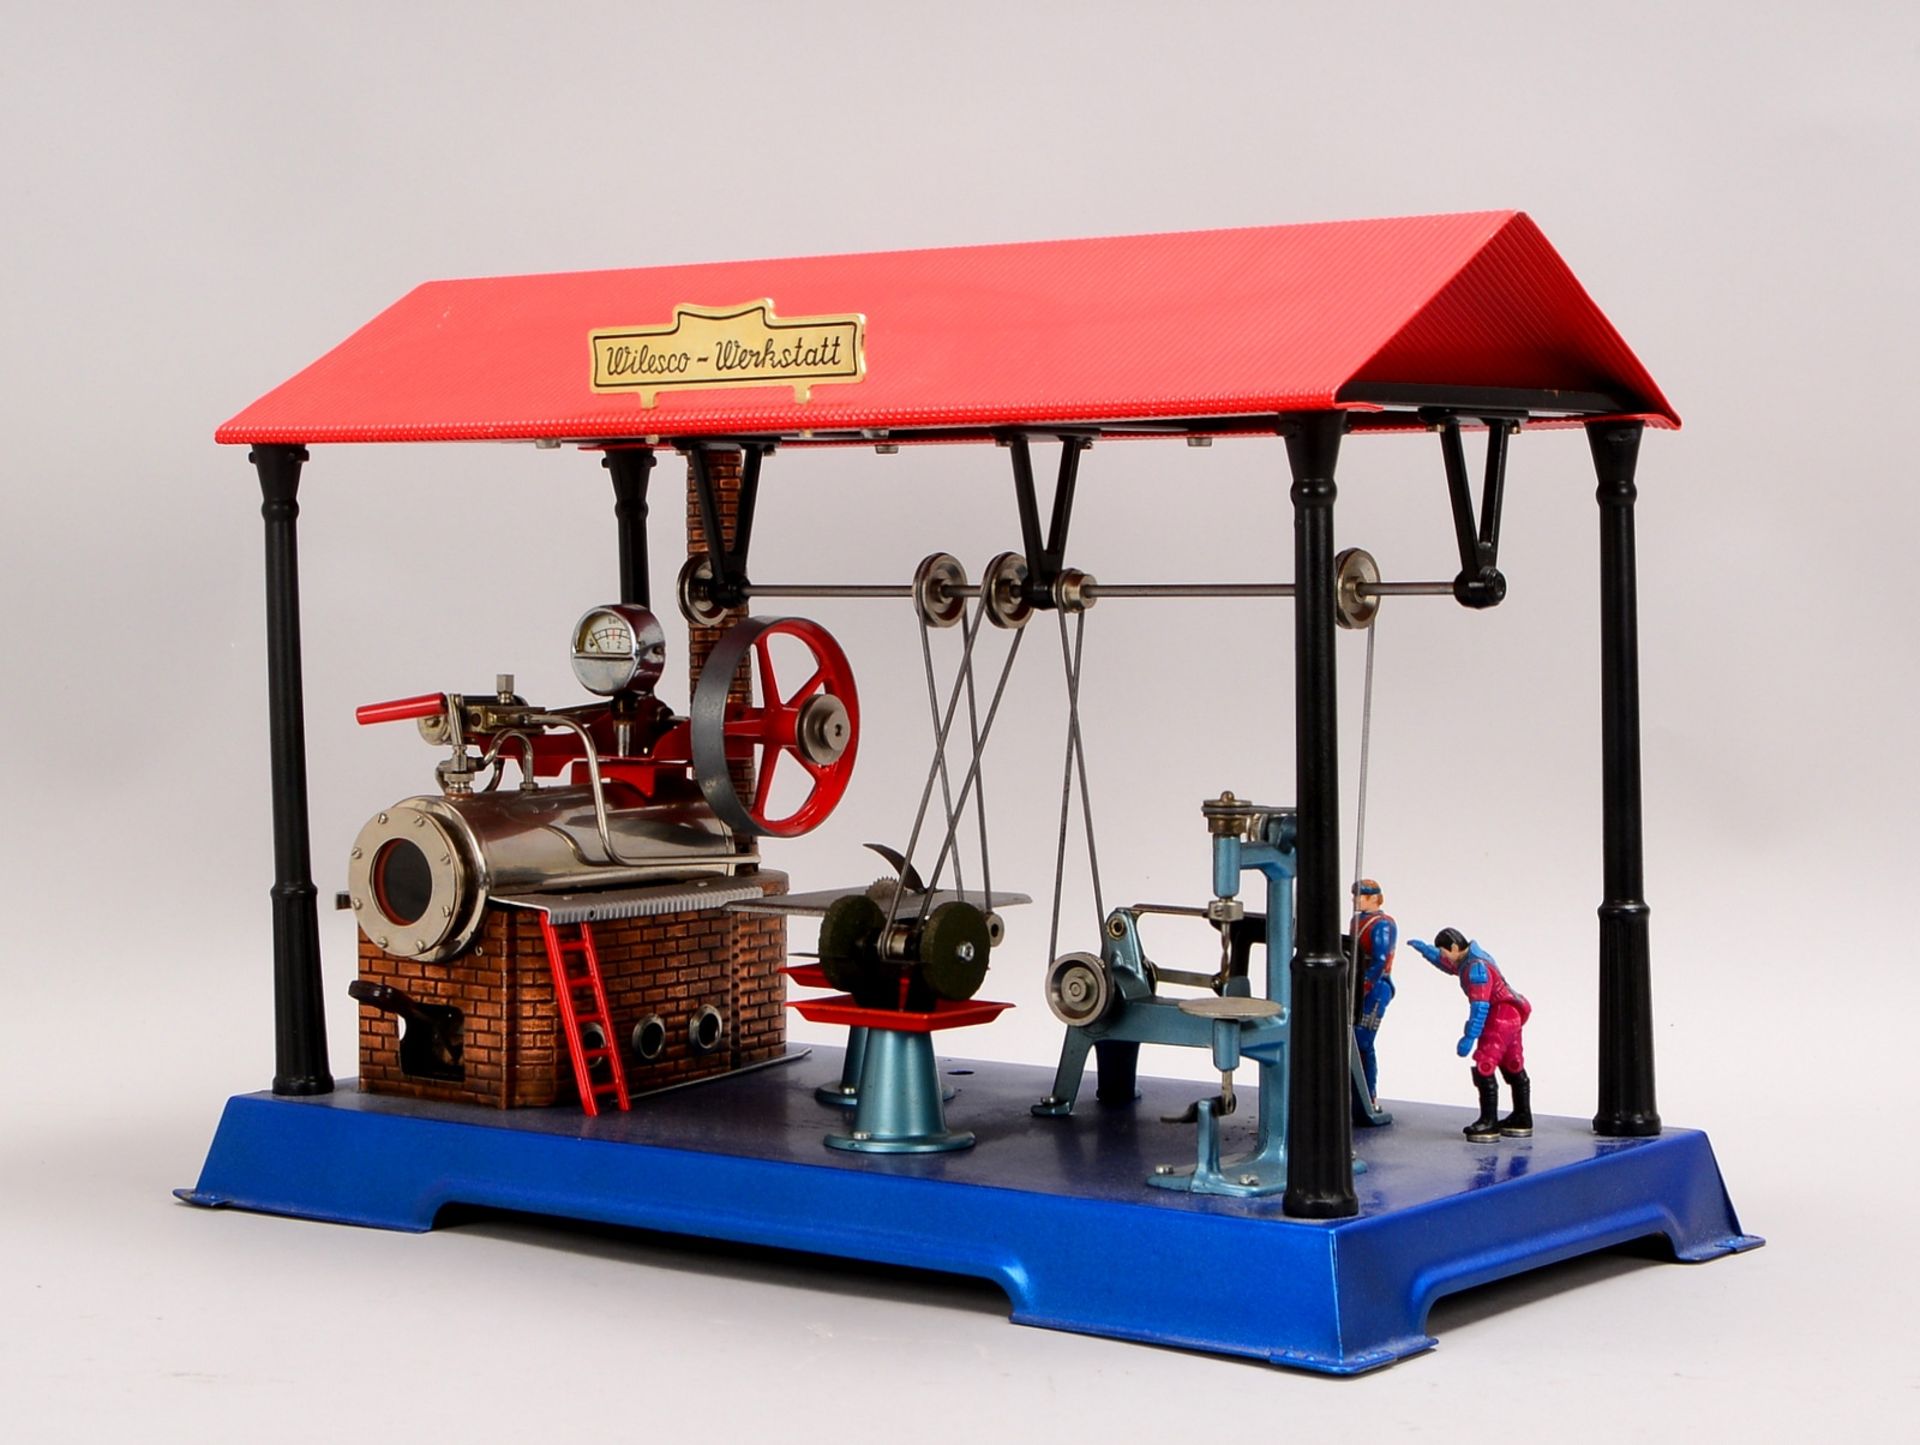 Gr. Dampfmaschinen-Modell, 'Wilesco-Werkstatt'; Höhe 31,5 cm, Grundplatte 45 x 24 cm - Bild 2 aus 2